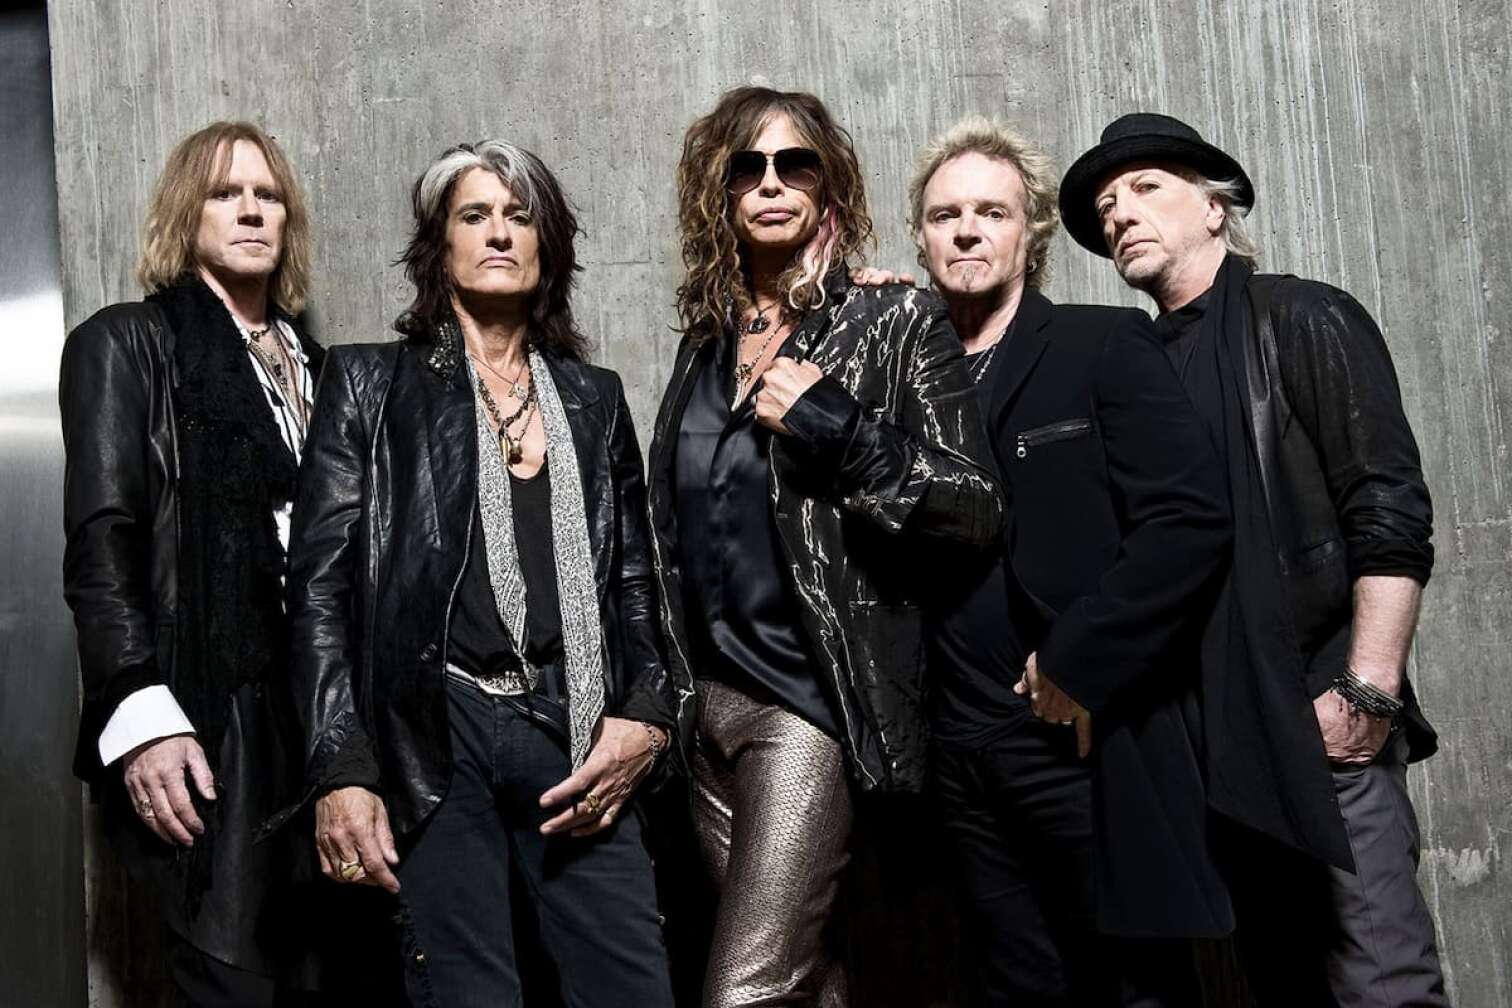 Gruppenfoto der Band Aerosmith